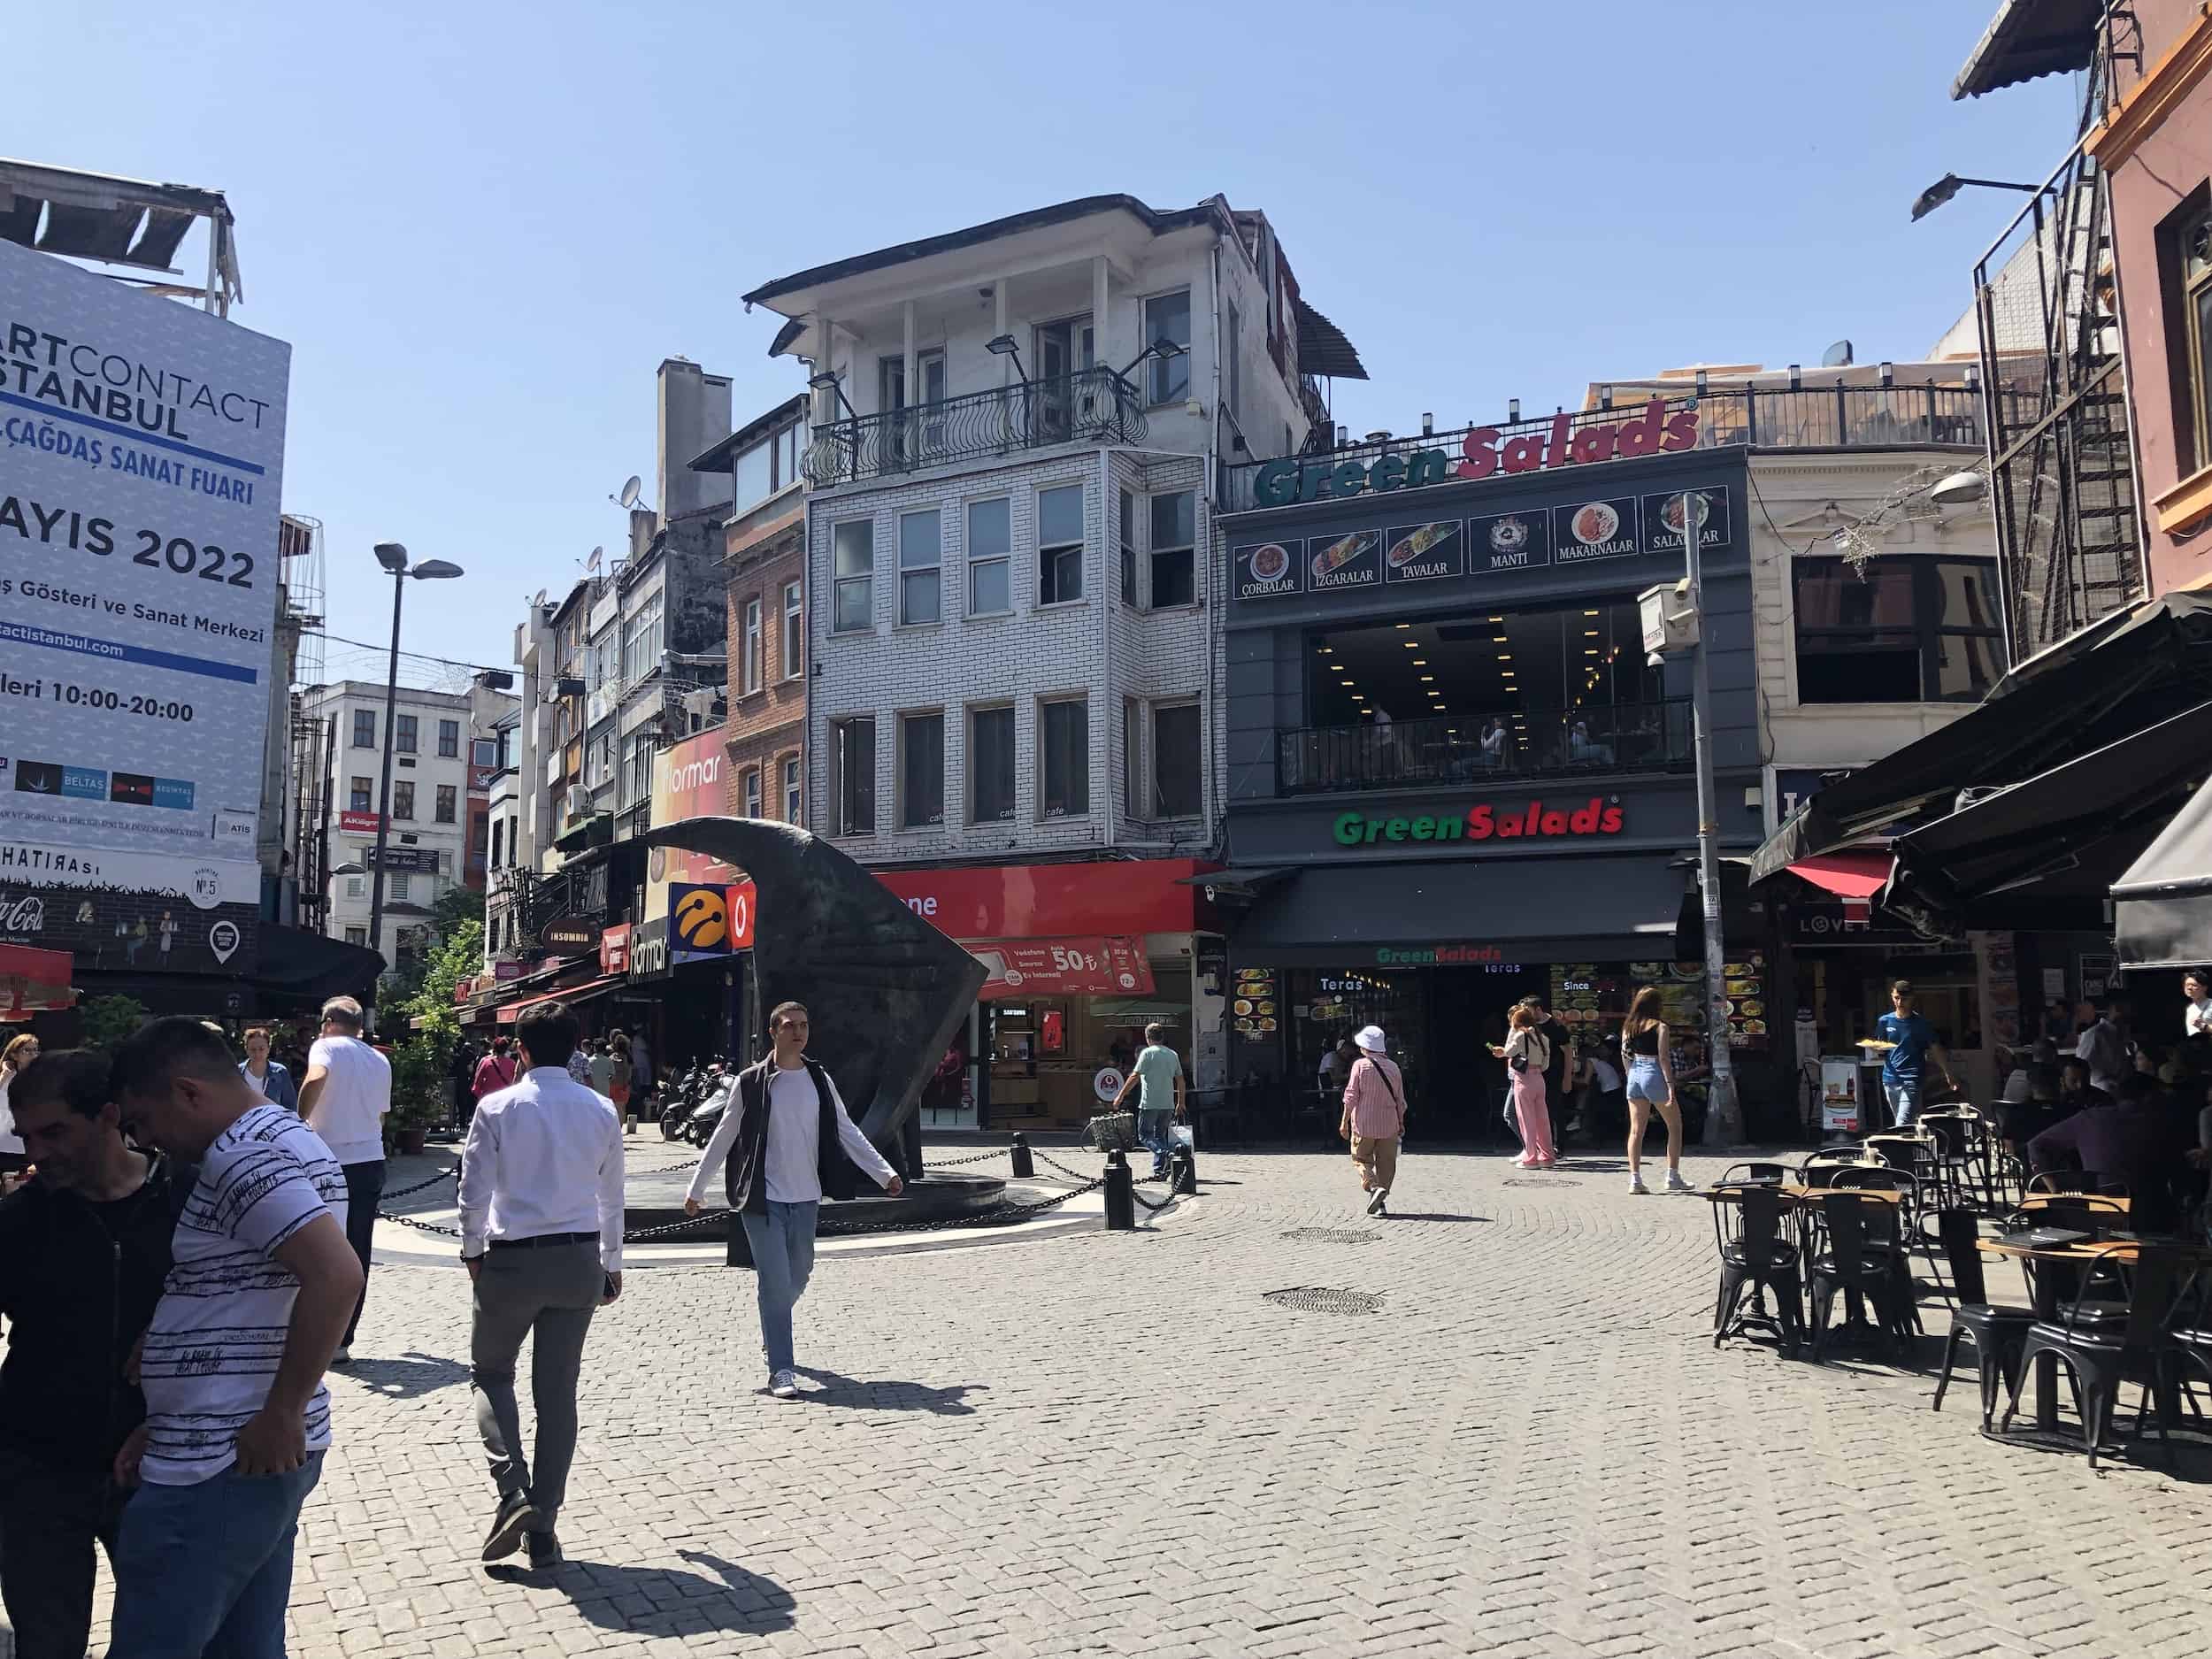 Square in Çarşı, Beşiktaş, Istanbul, Turkey